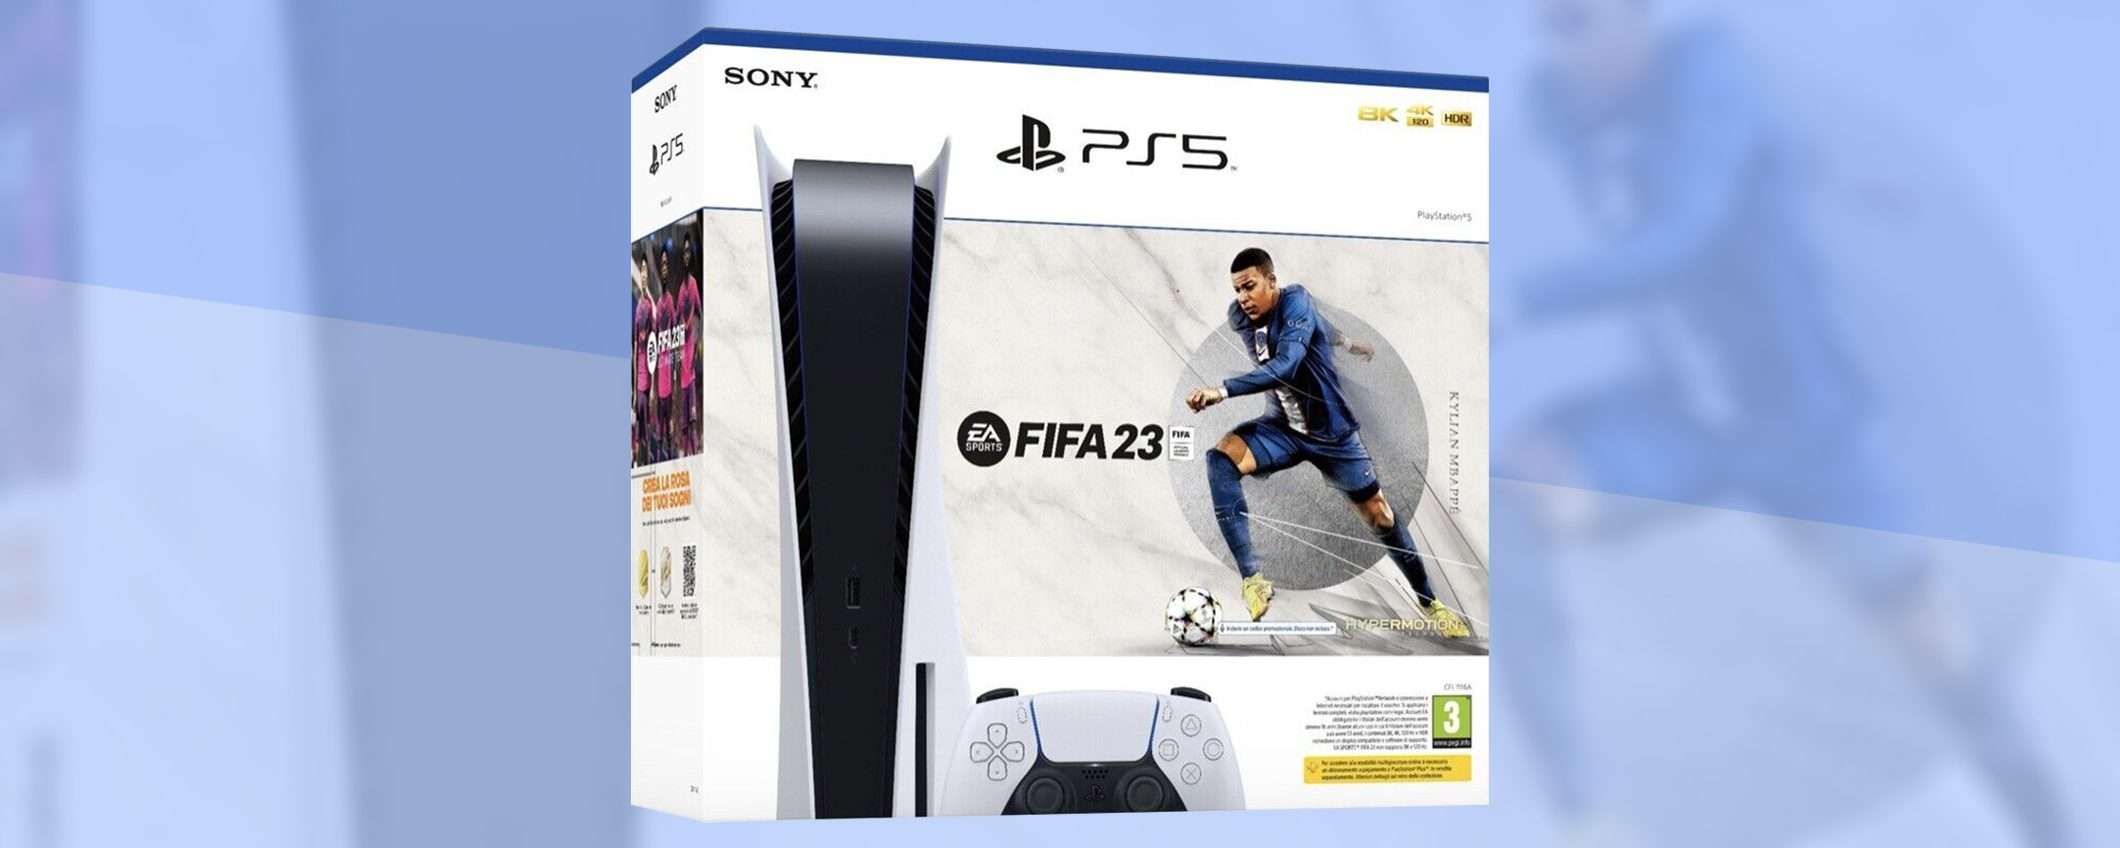 PS5+FIFA 23: il bundle è disponibile su eBay